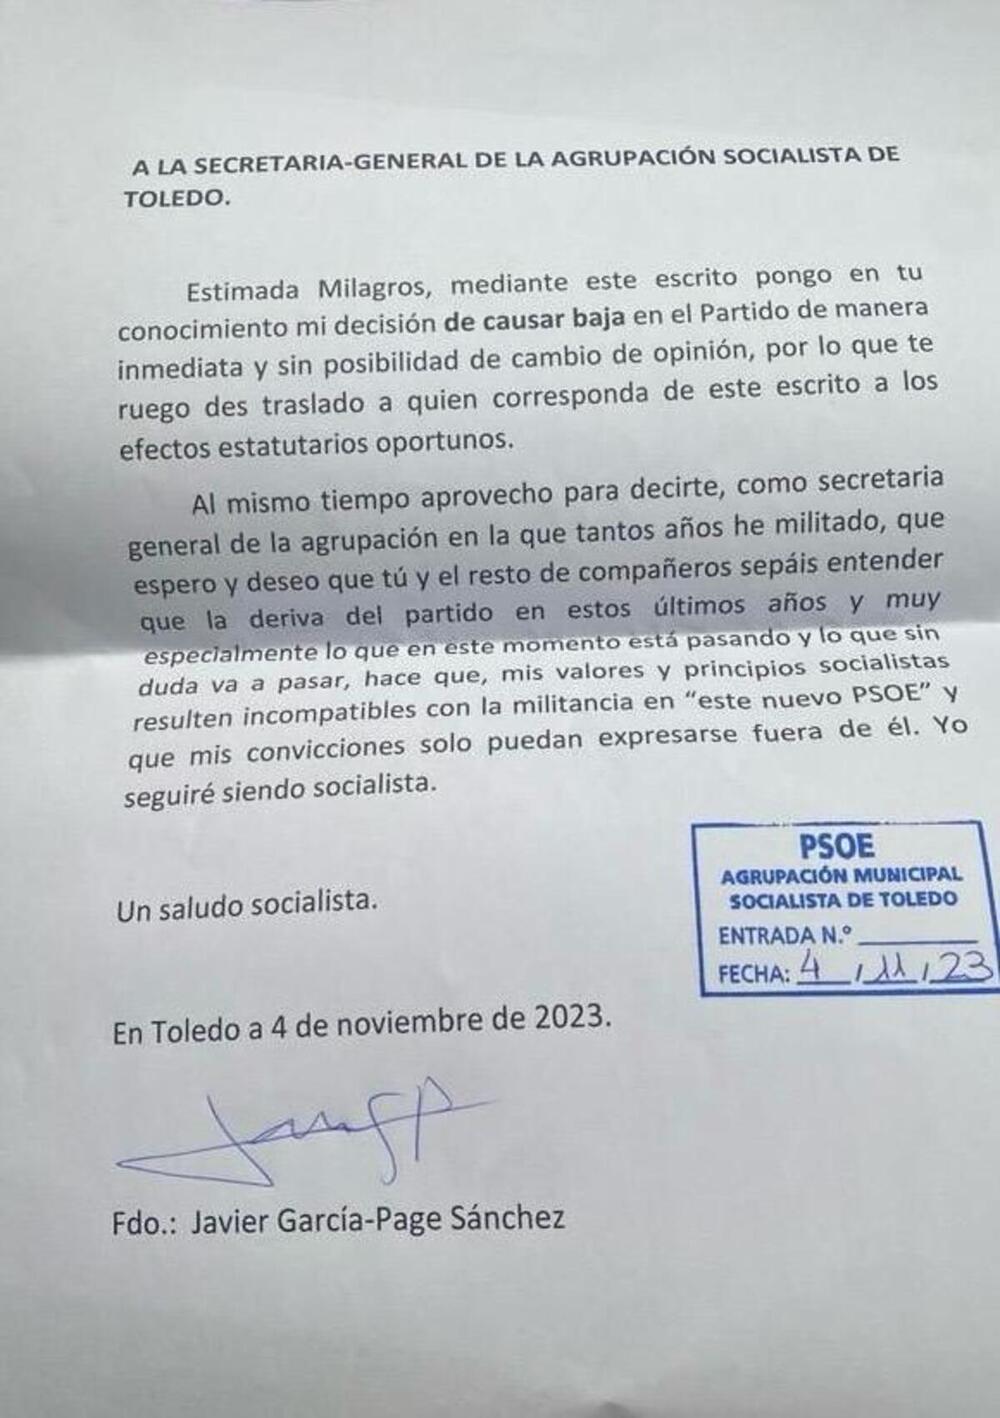 Carta enviada por el hermano de Emiliano García-Page a la agrupación socialista de Toledo comunicando su baja.